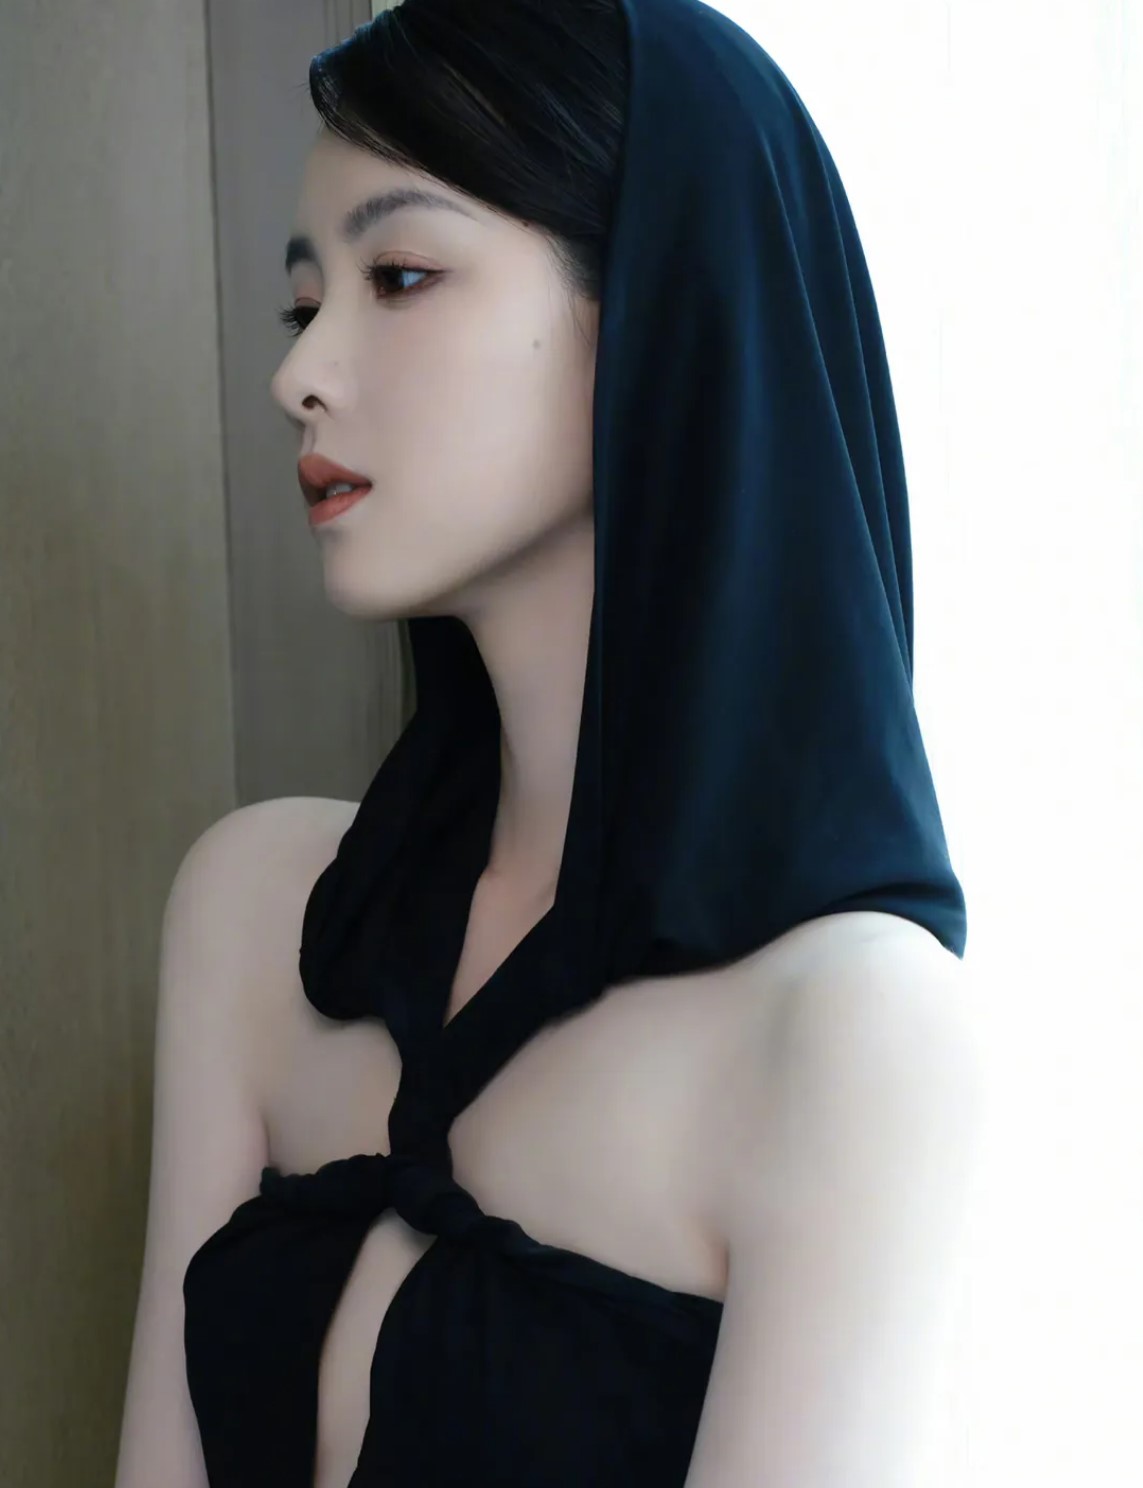 陈都灵露腰黑裙造型好美 设计巧妙将身材尽显无余